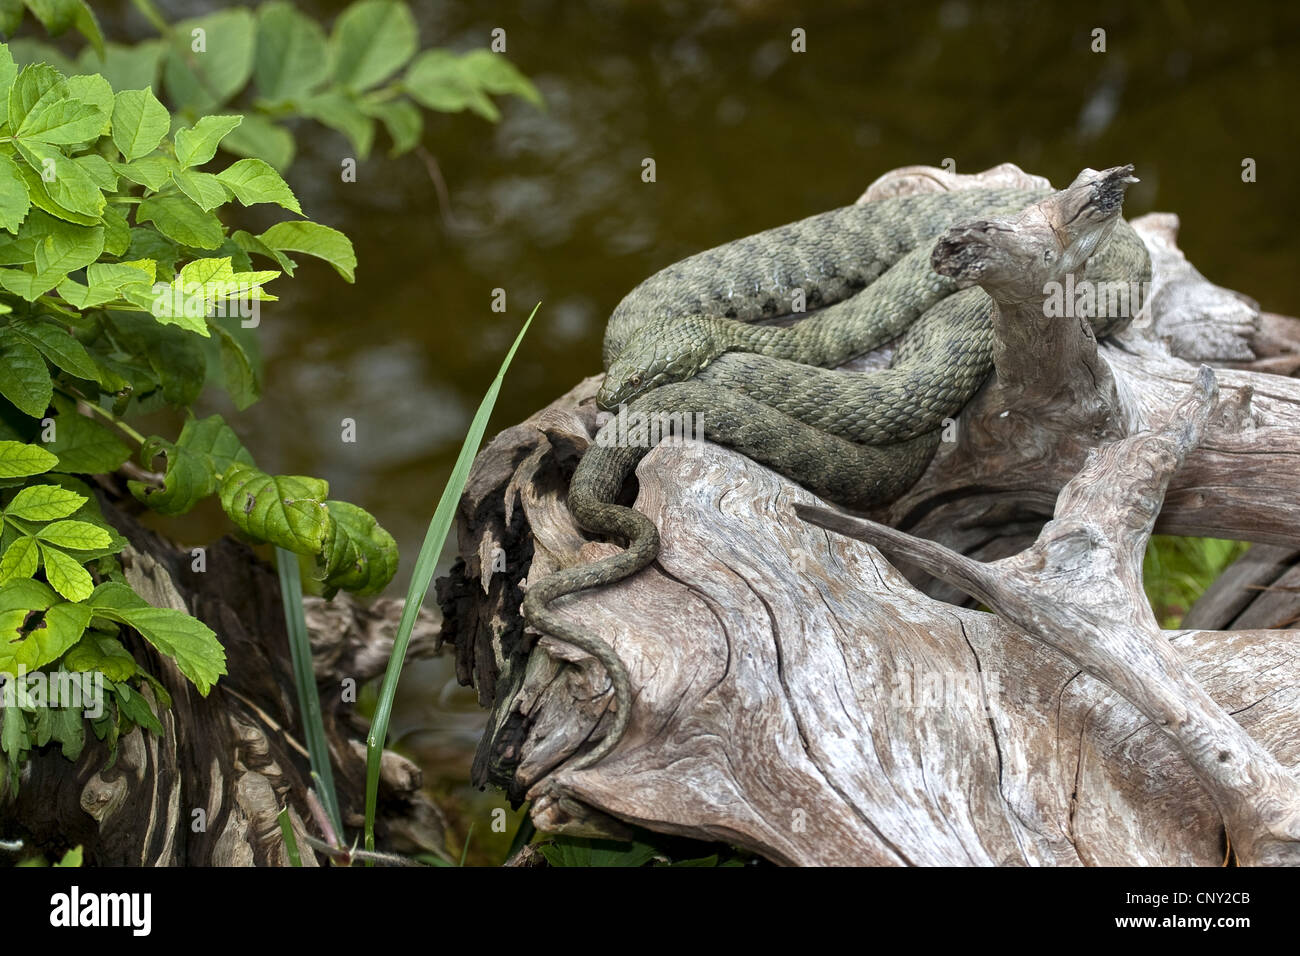 Snake (Natrix tessellata dés), couché sur une branche, Allemagne Banque D'Images